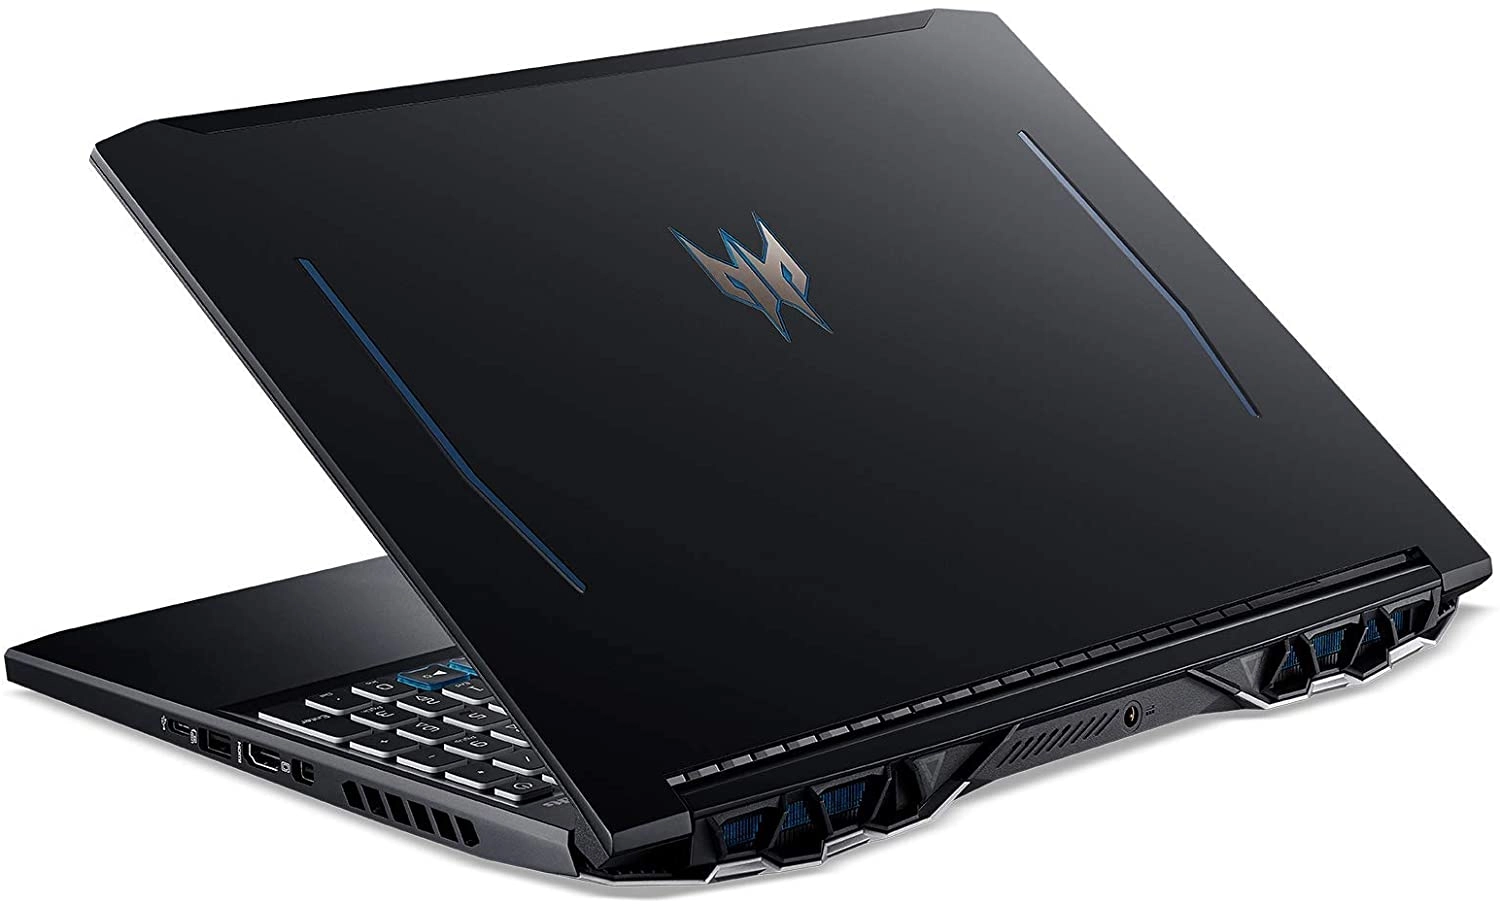 Acer PH315-53 laptop image